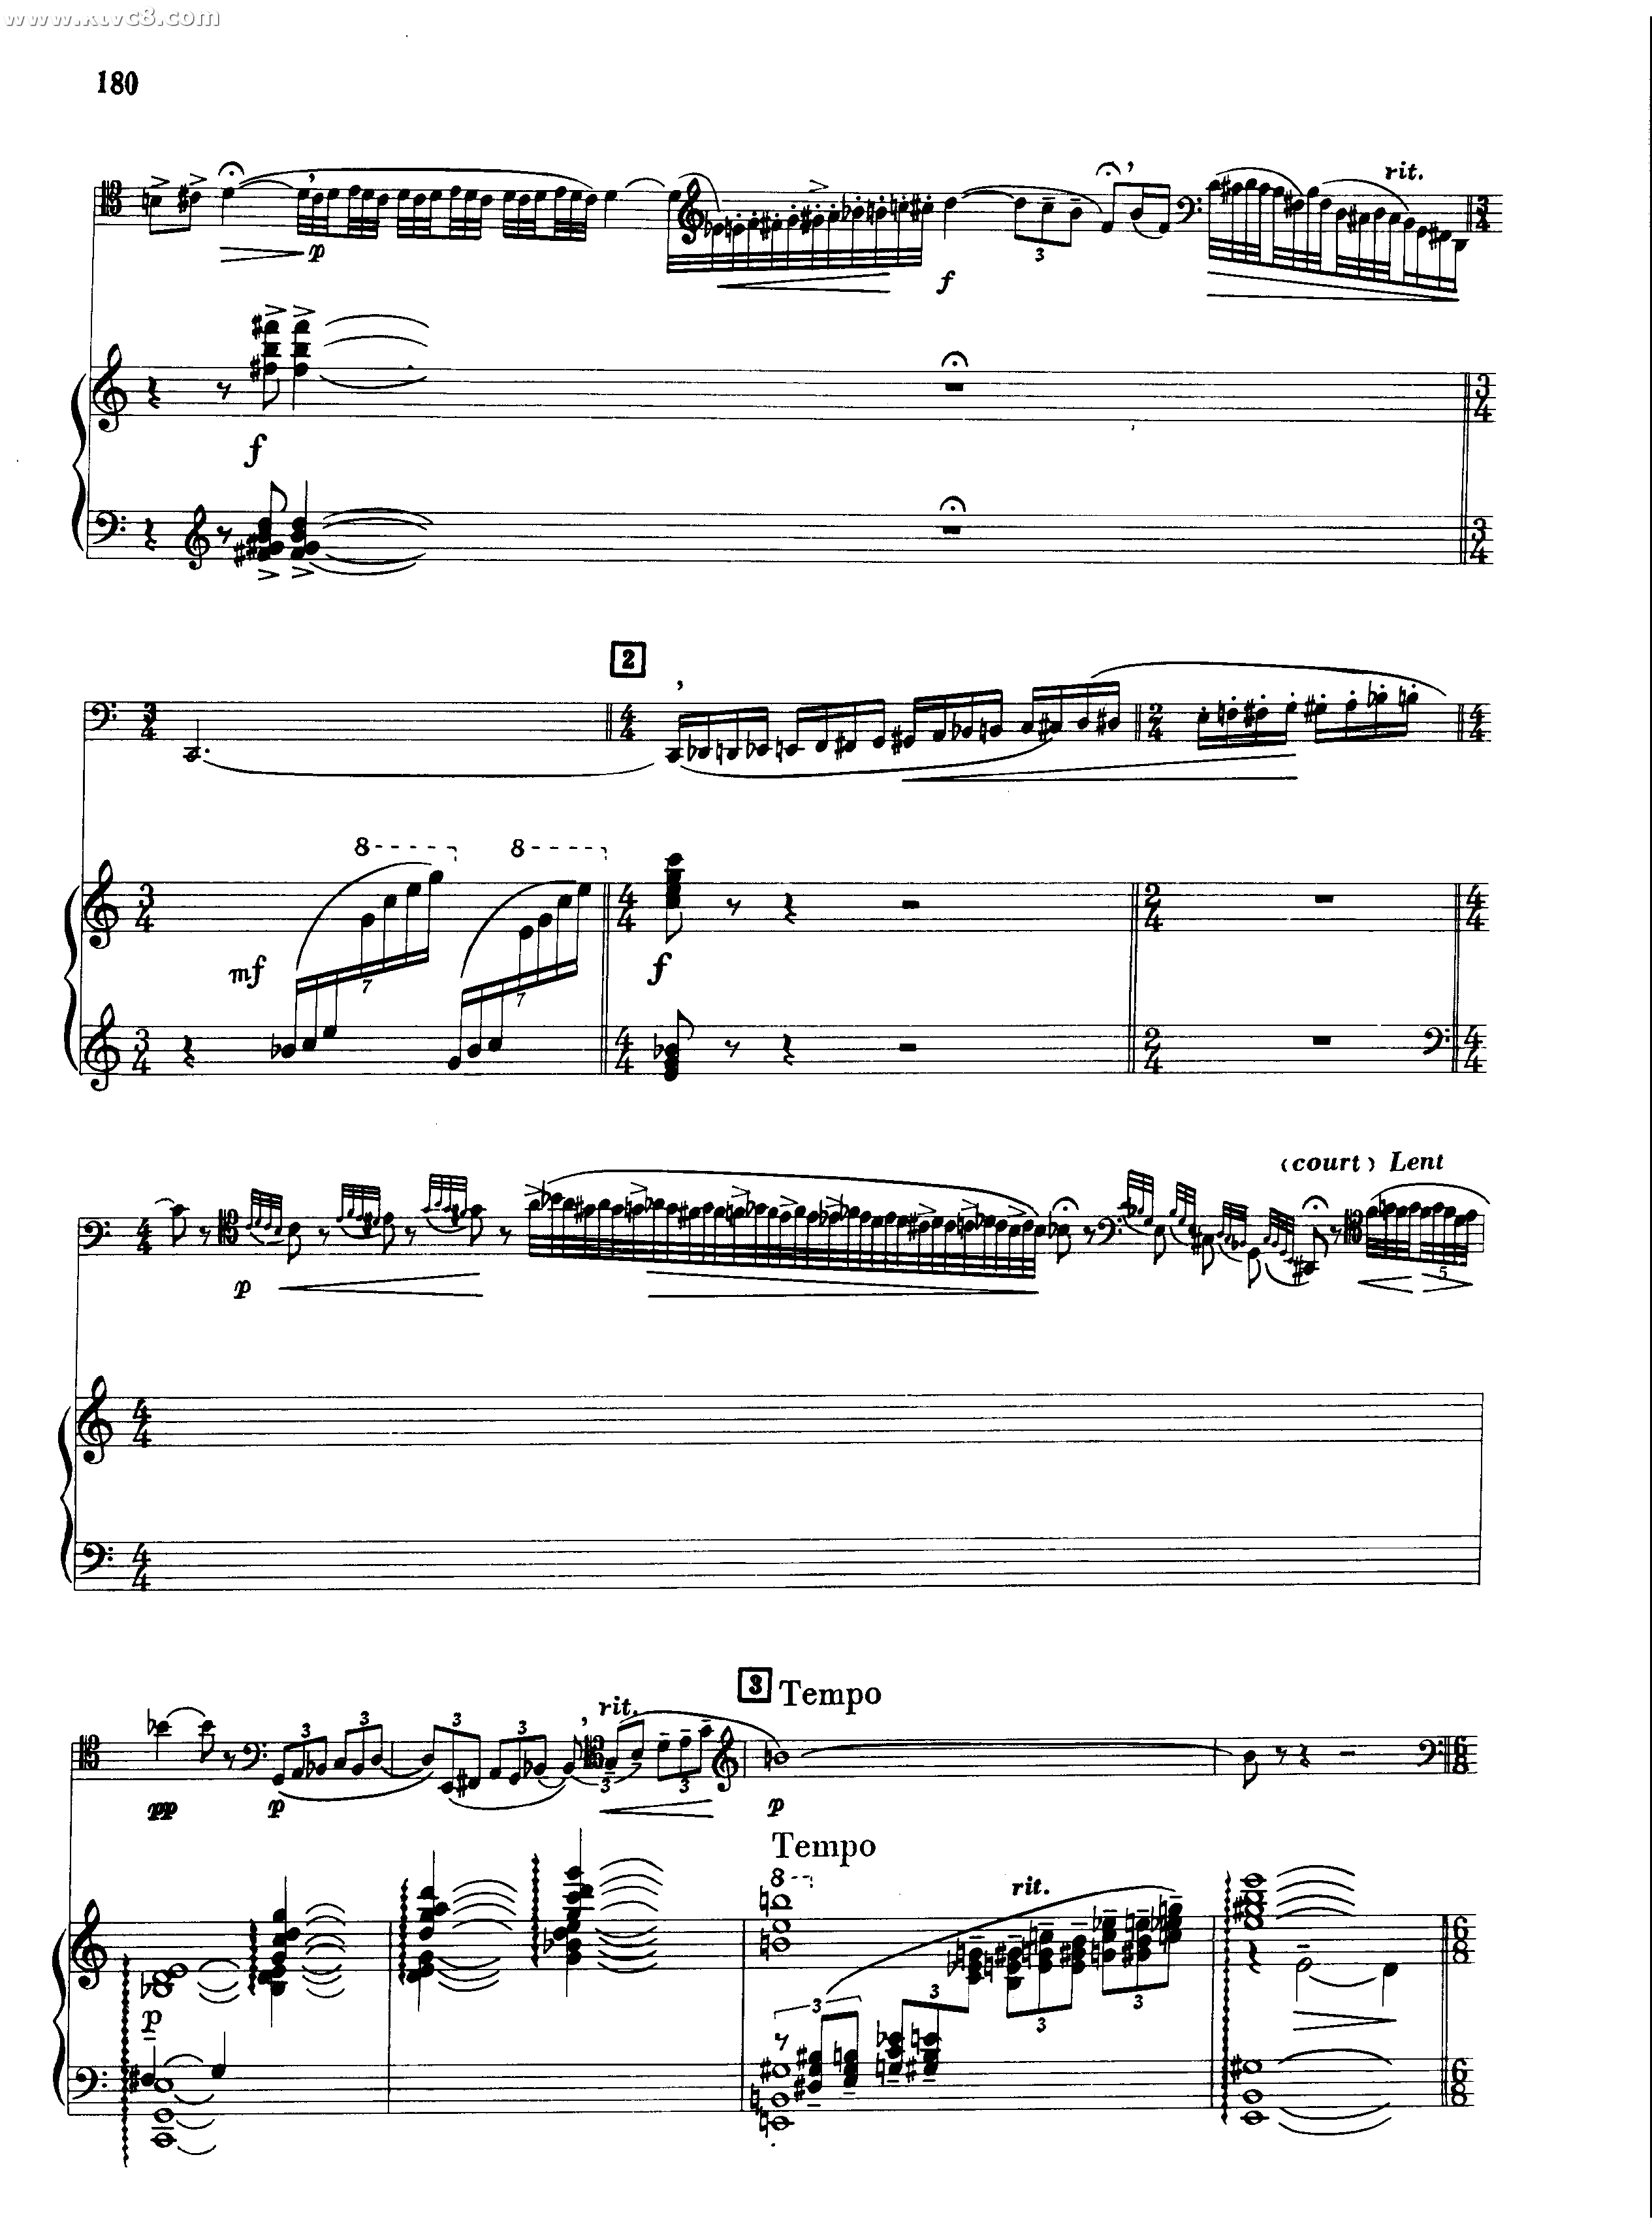 西西里舞曲-福莱双手简谱预览2-钢琴谱文件（五线谱、双手简谱、数字谱、Midi、PDF）免费下载